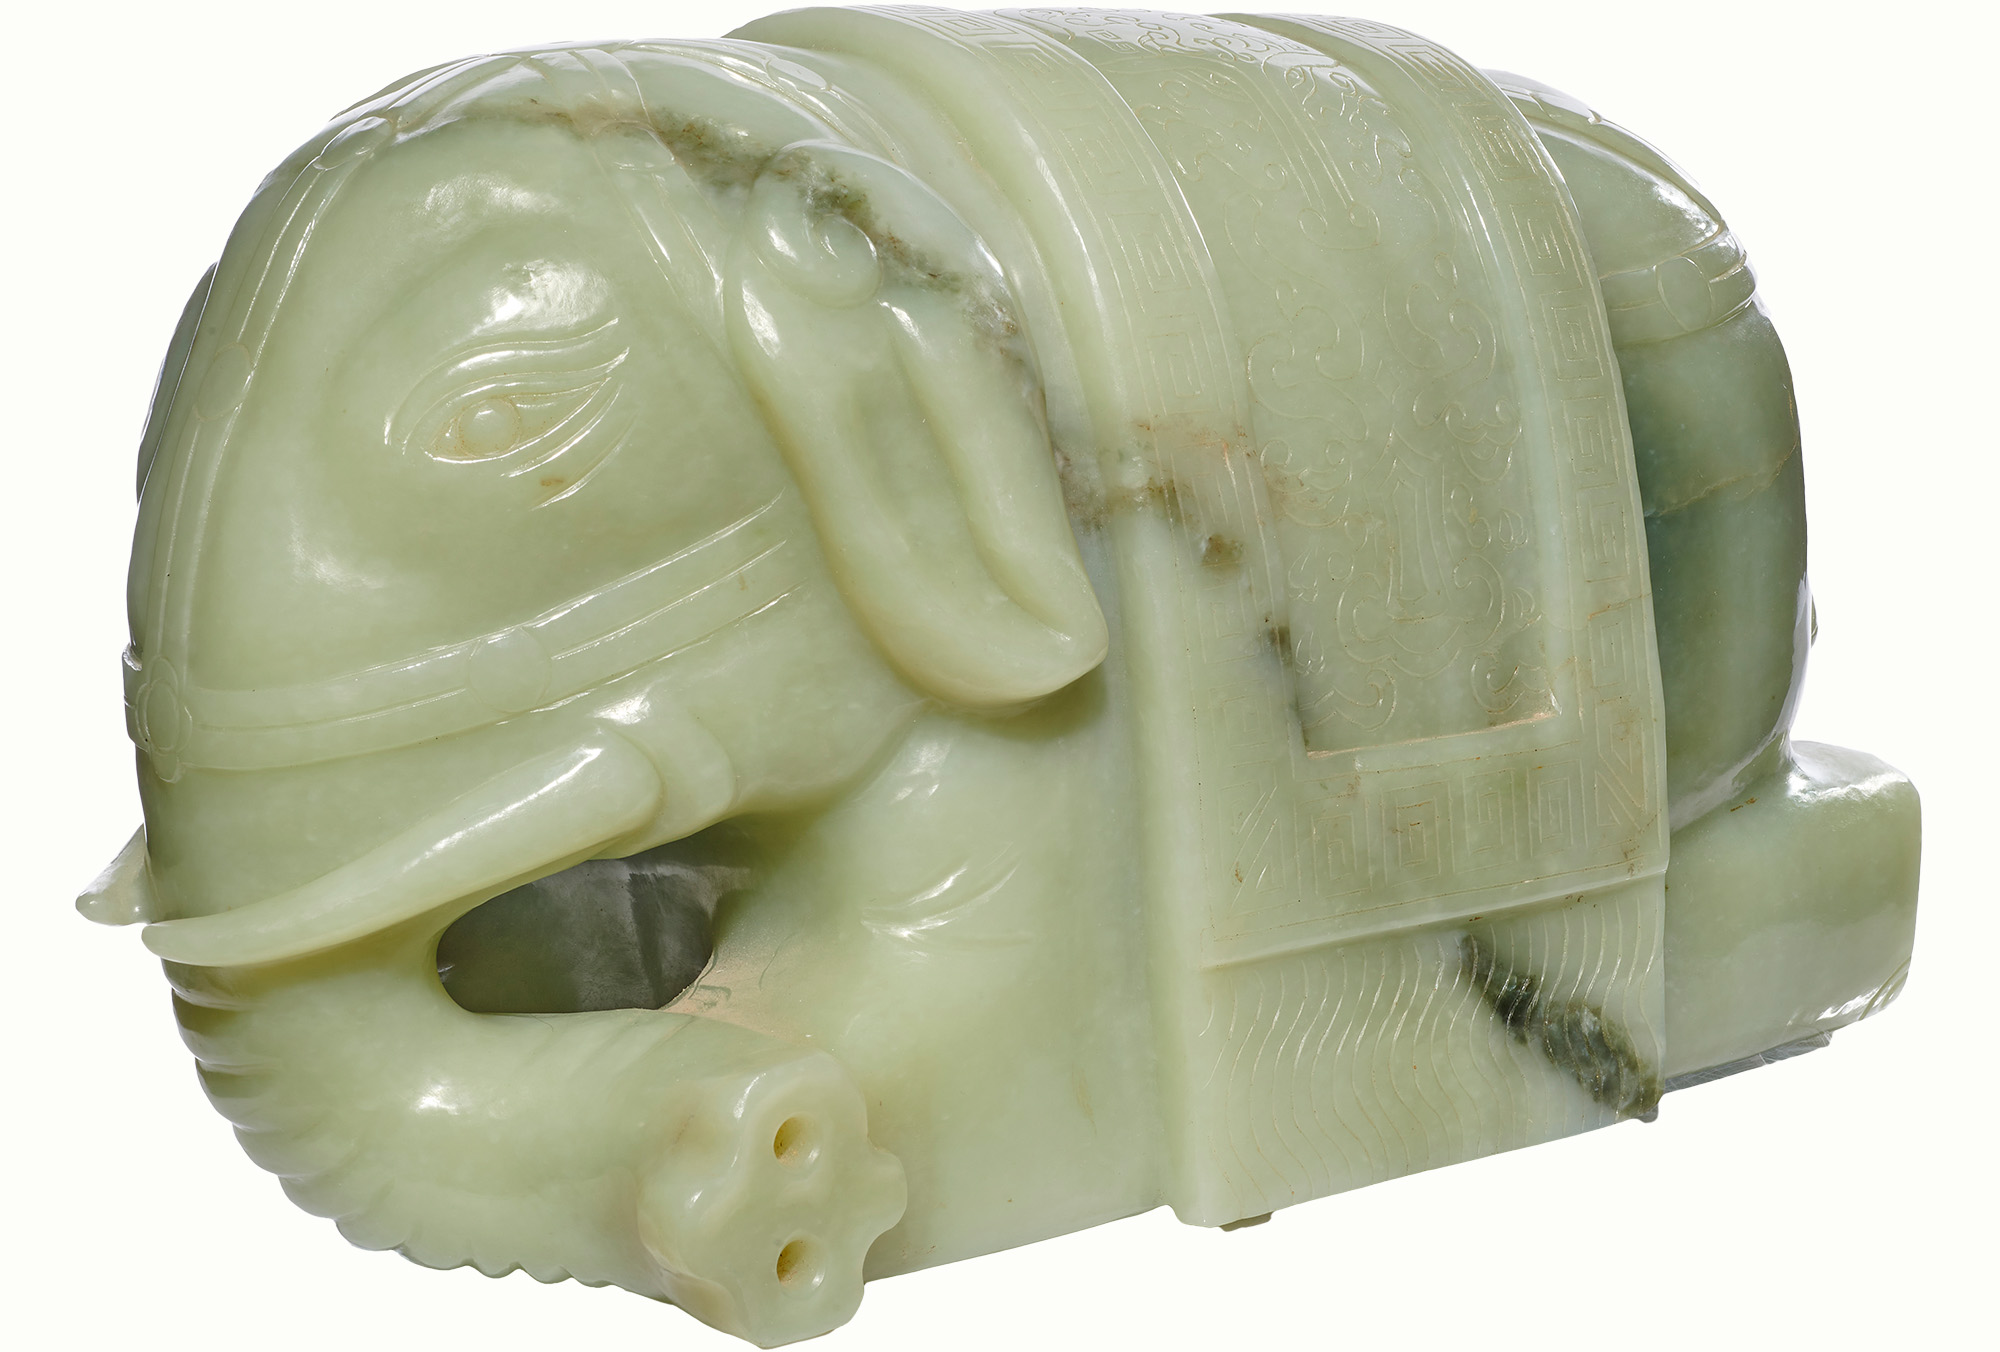 A Chinese celadon jade elephant figure.